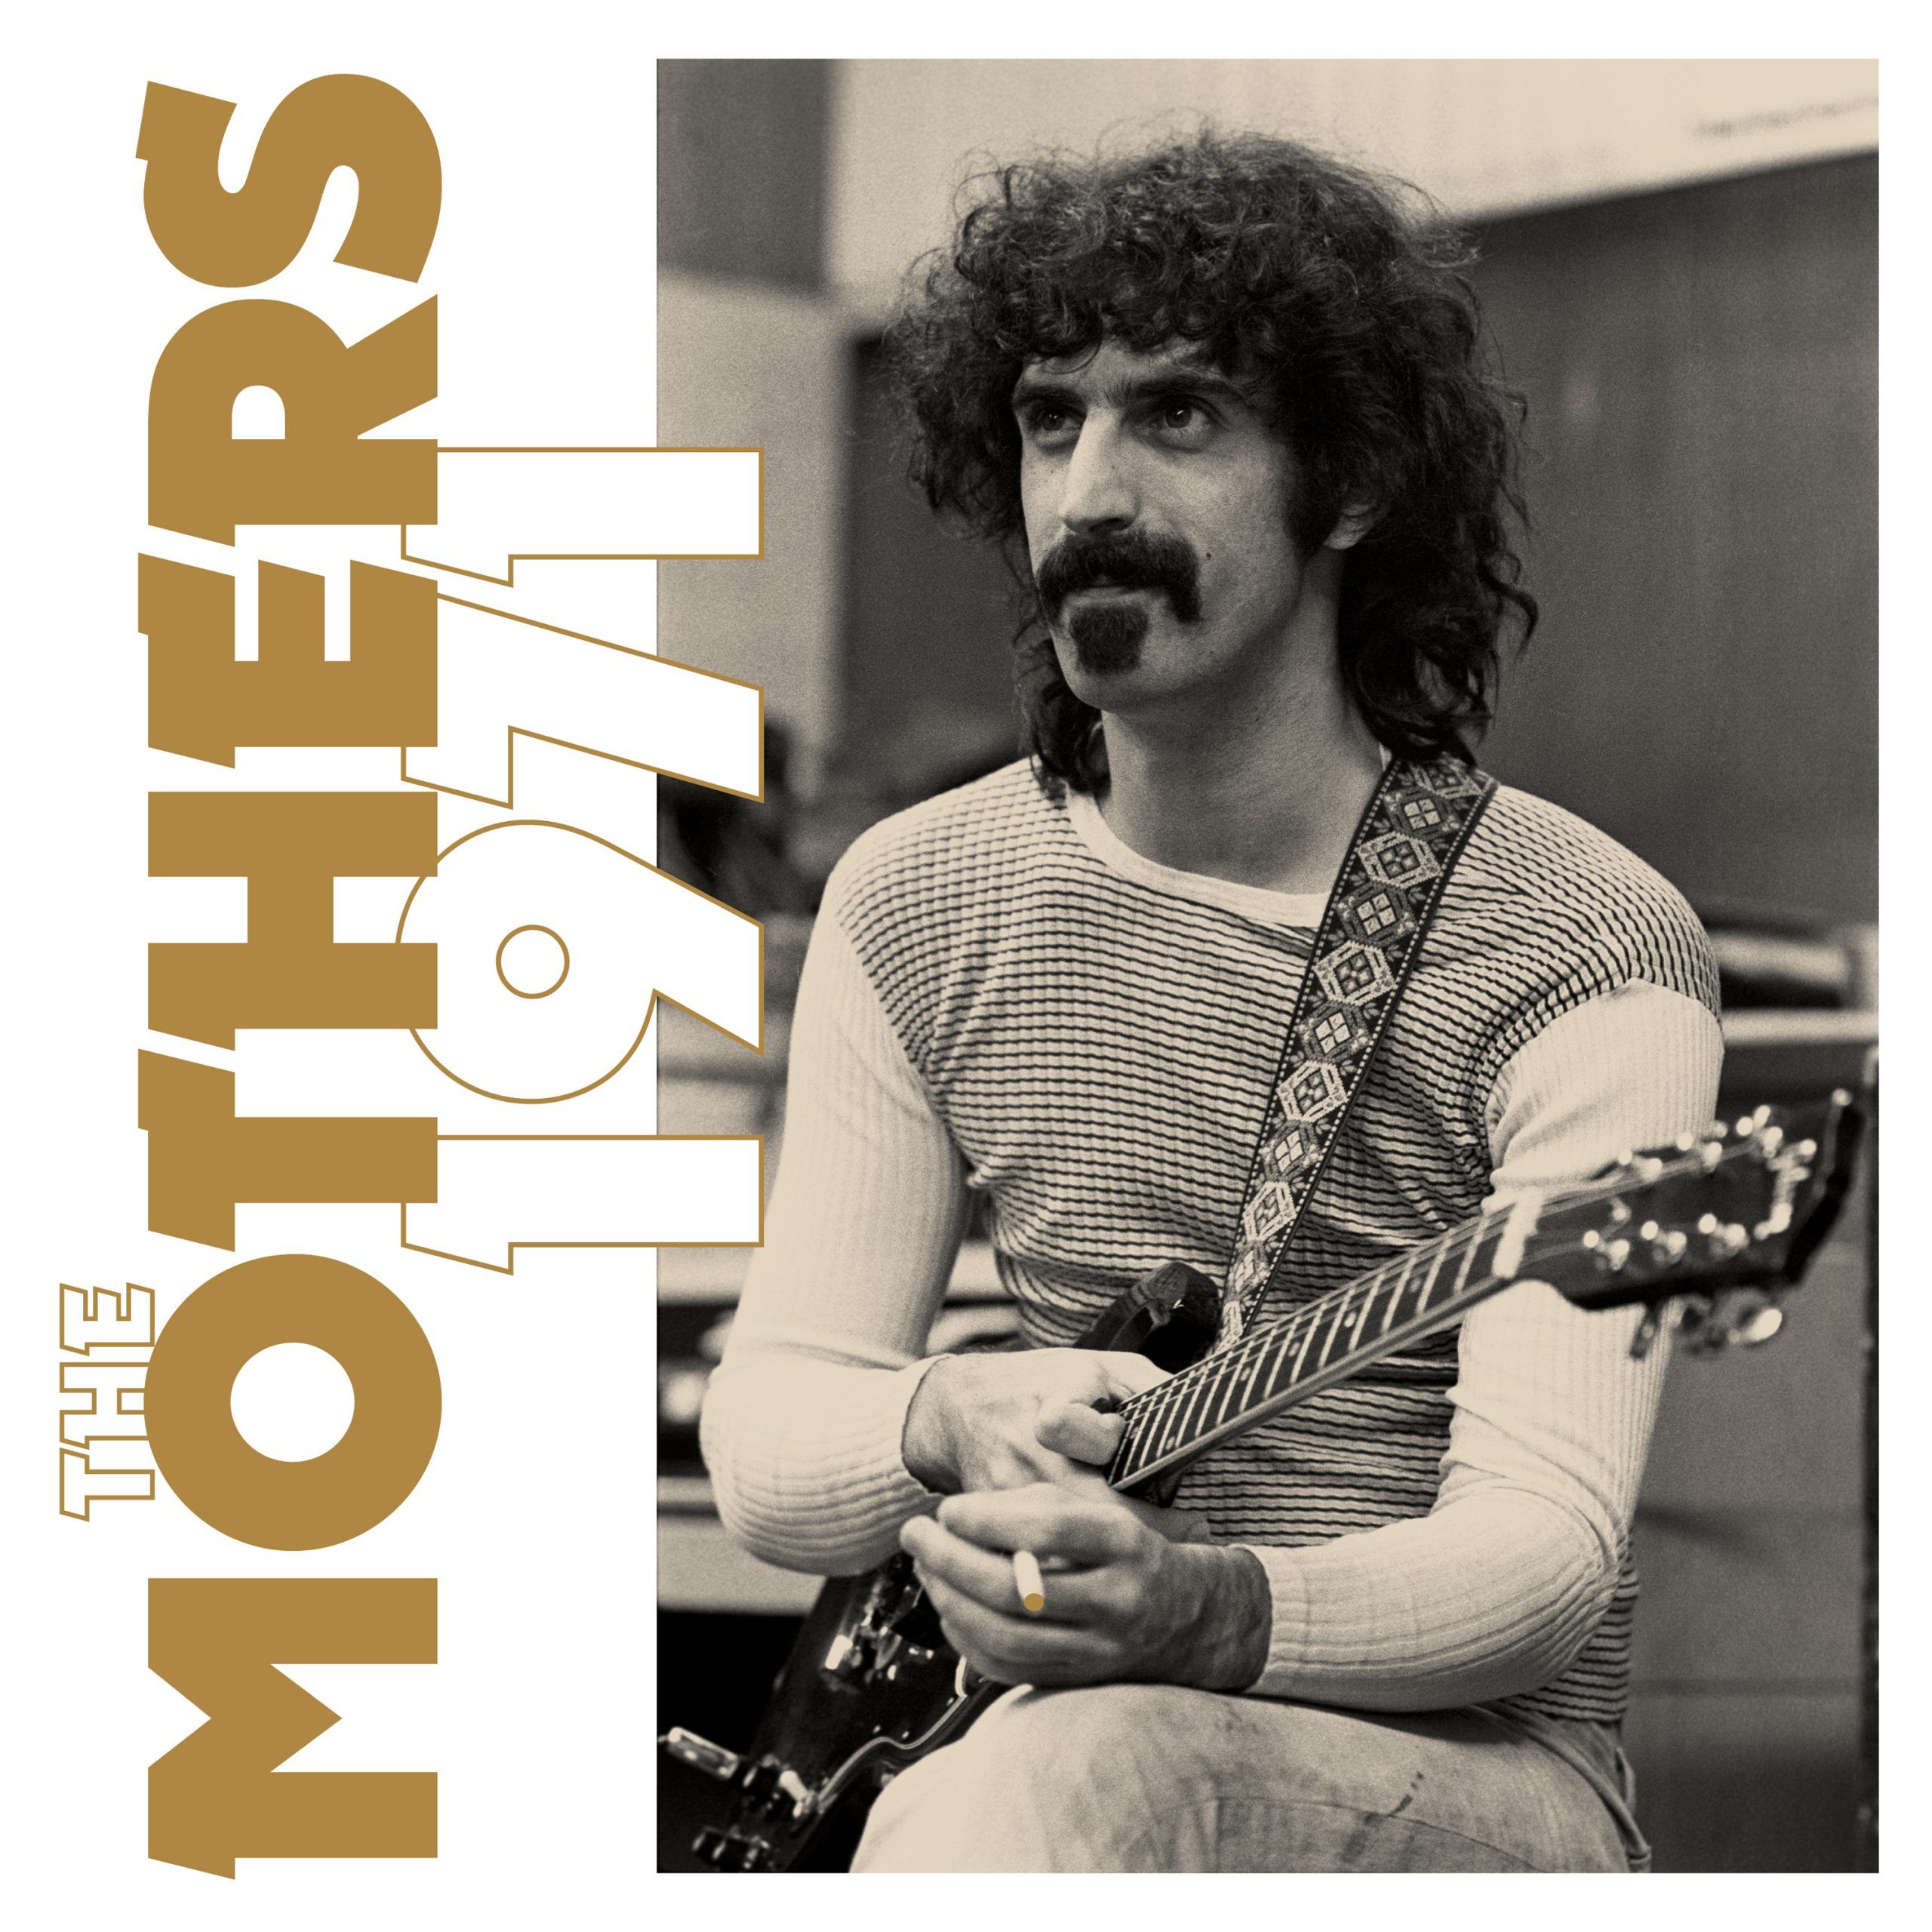 The Mothers band di Frank Zappa album e tour - immagini